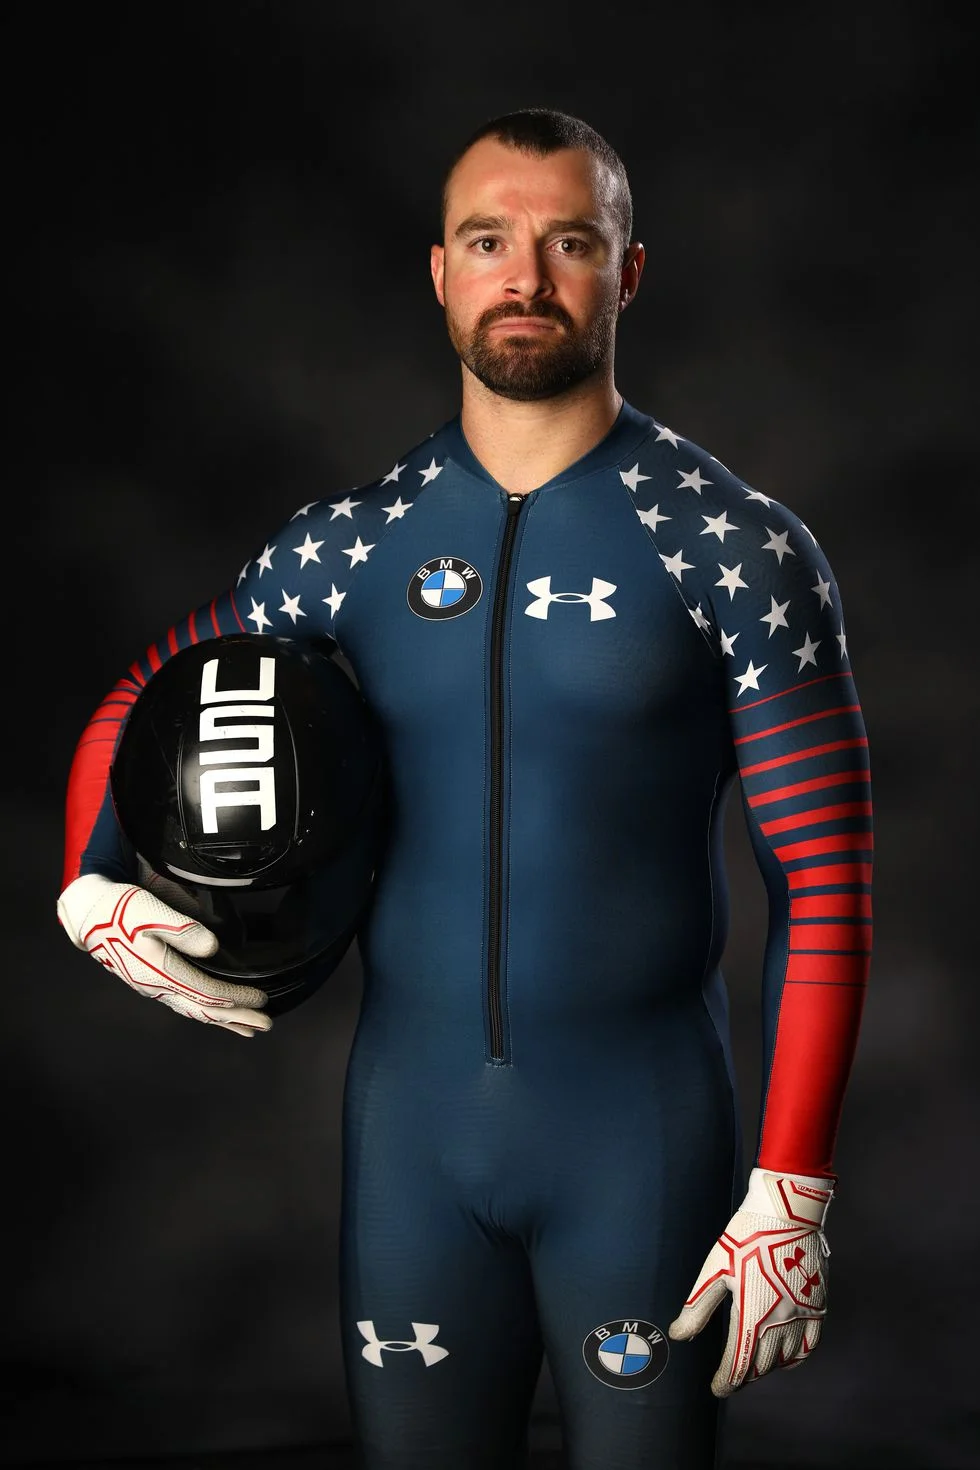 Олимпиада - это не только спорт, но и пенисы, которые видны через очень плотные костюмы - фото 366194